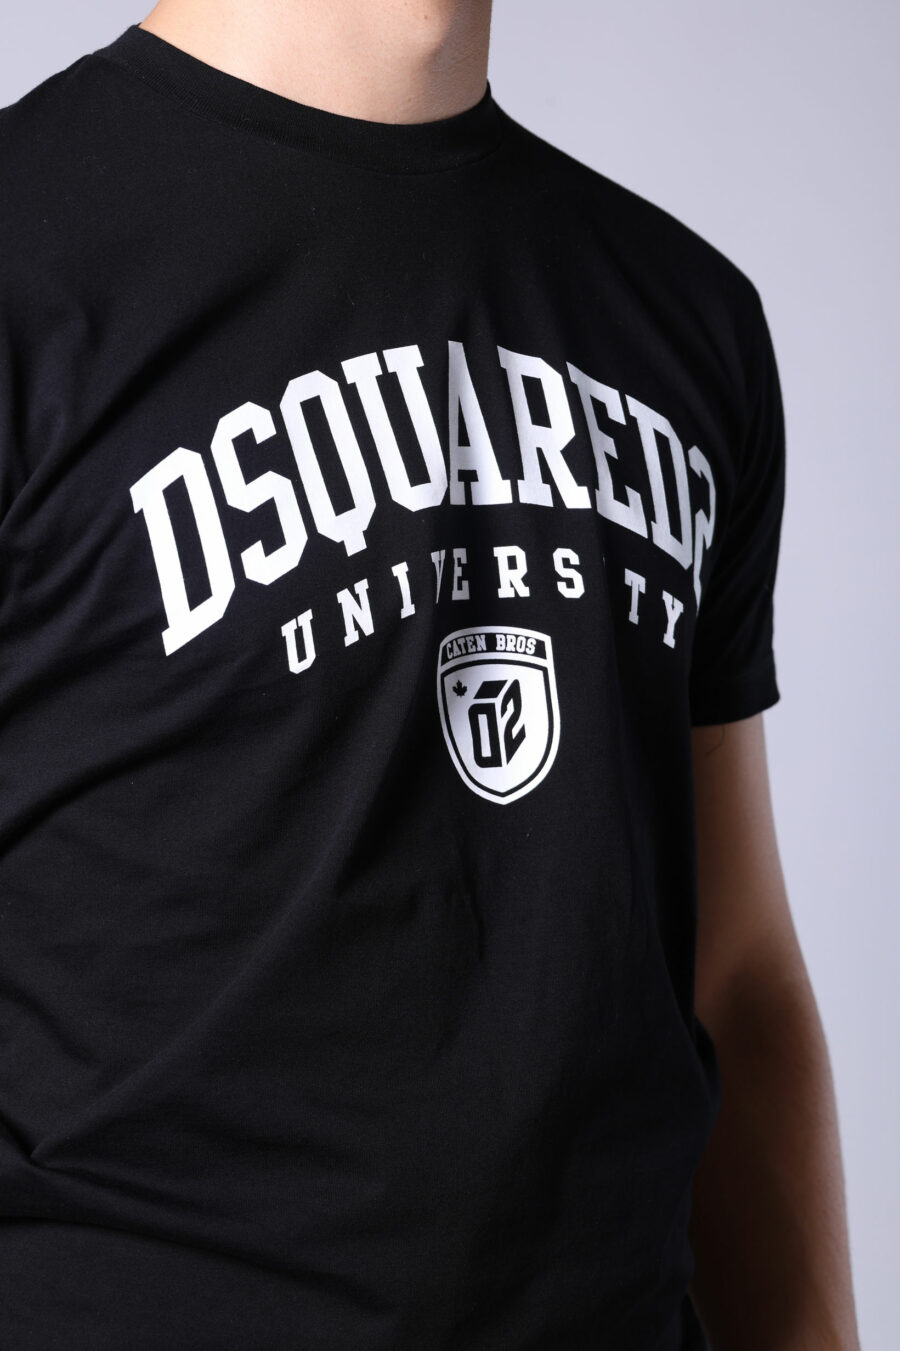 Black T-shirt with white "university" maxi logo - Untitled Catalog 05240